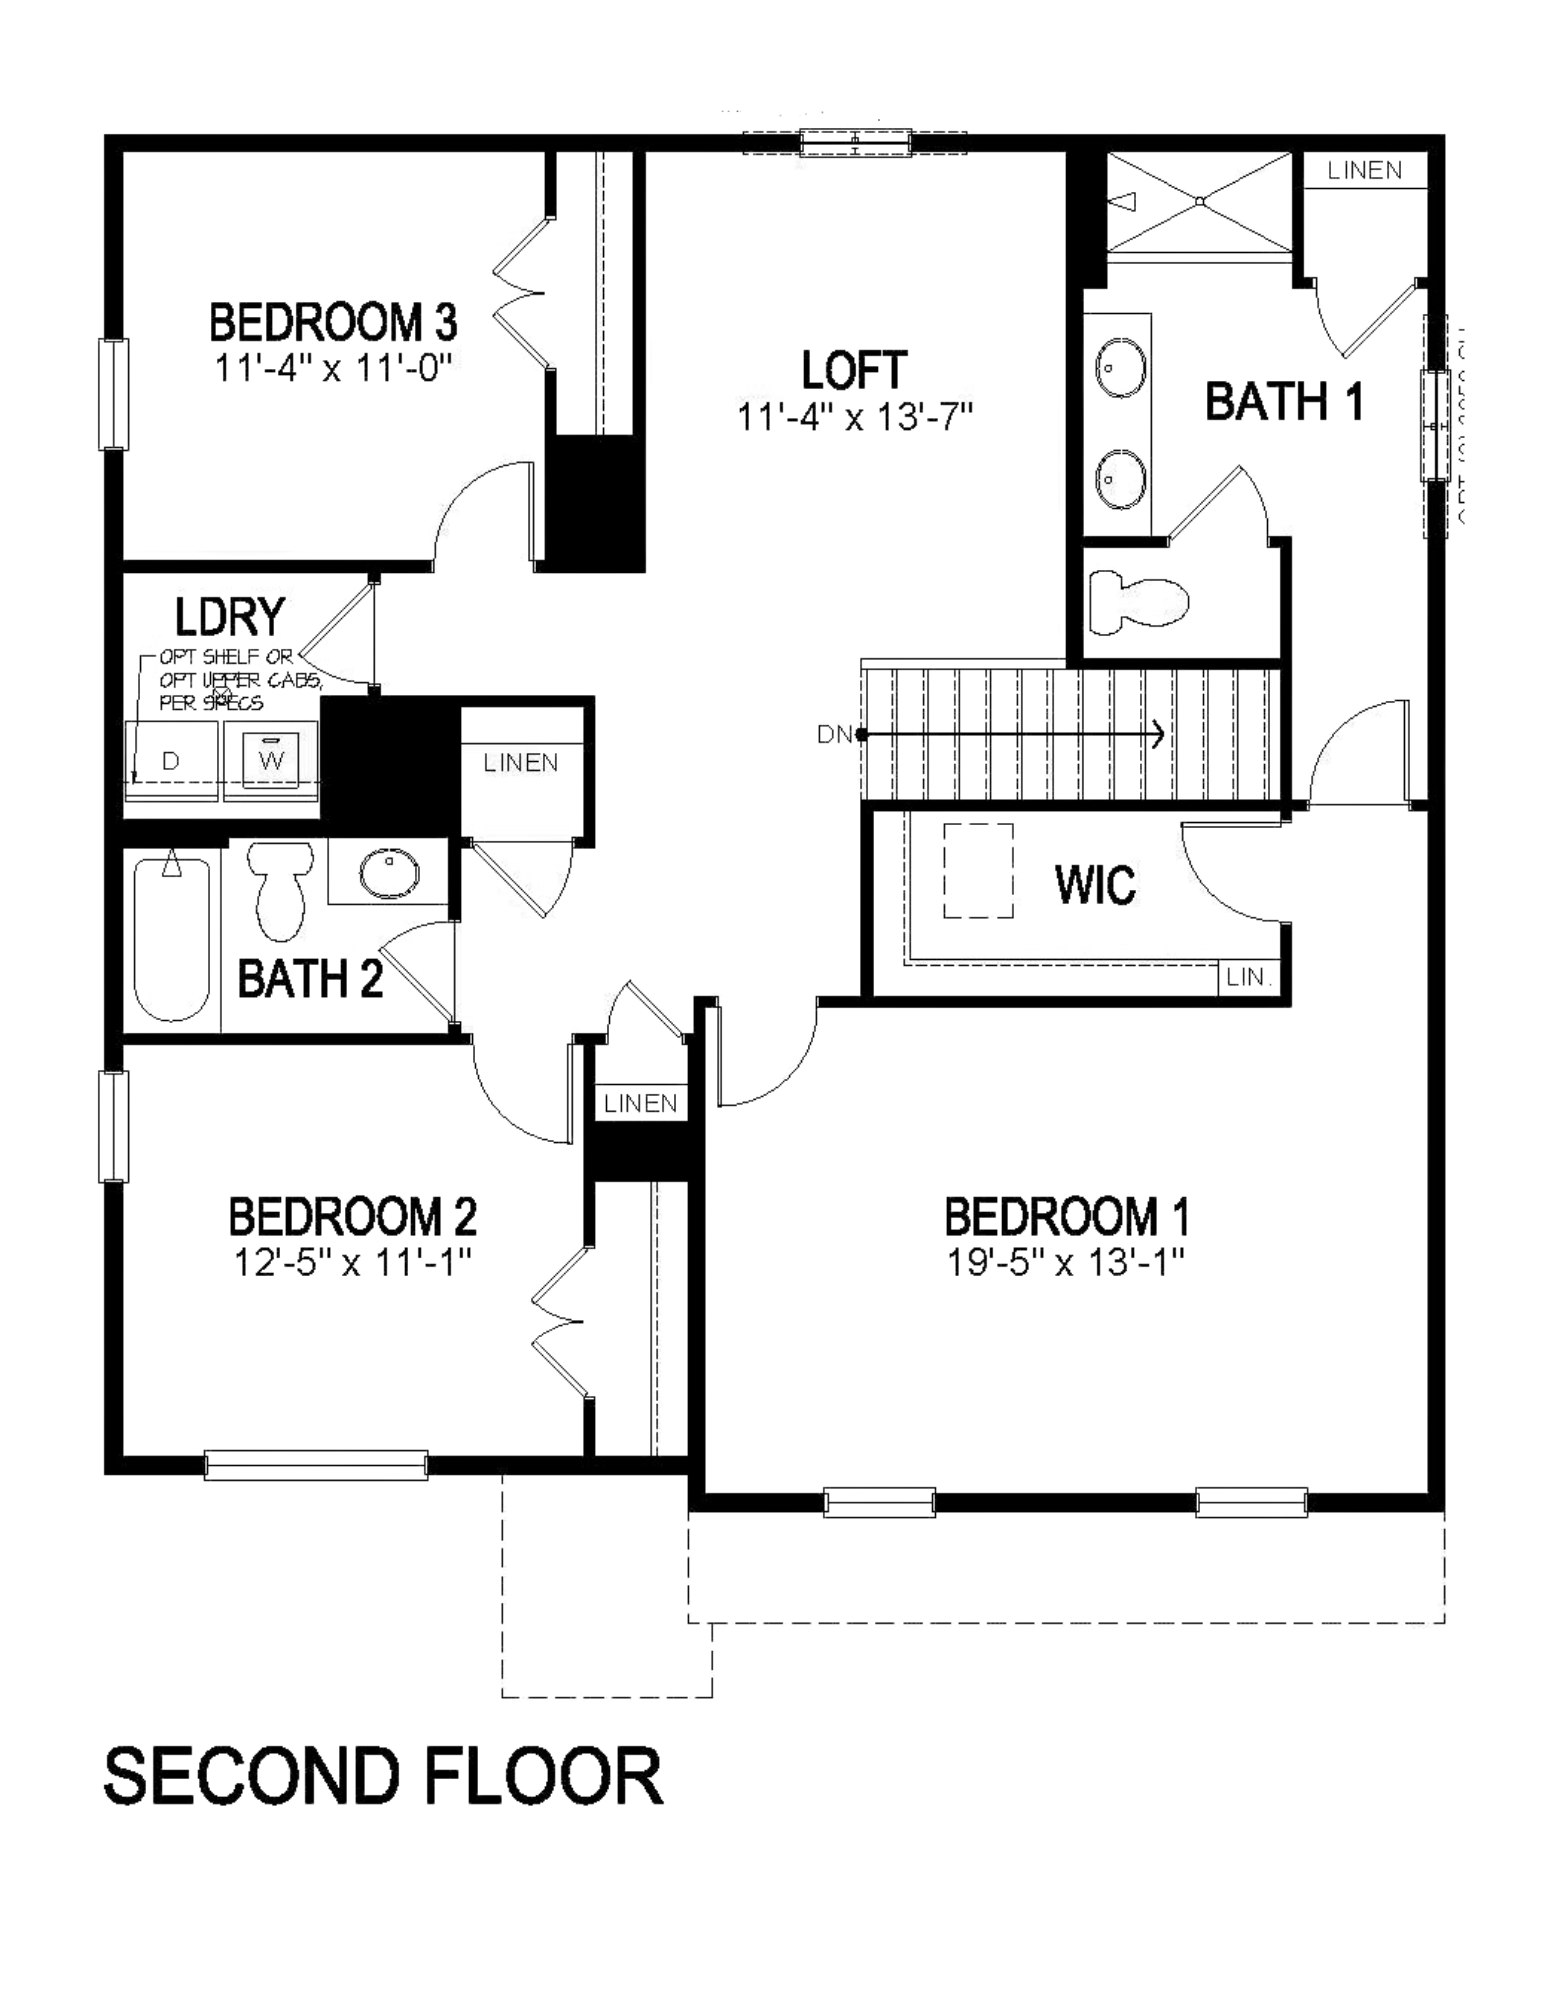 pendleton floorplan second floor blackline